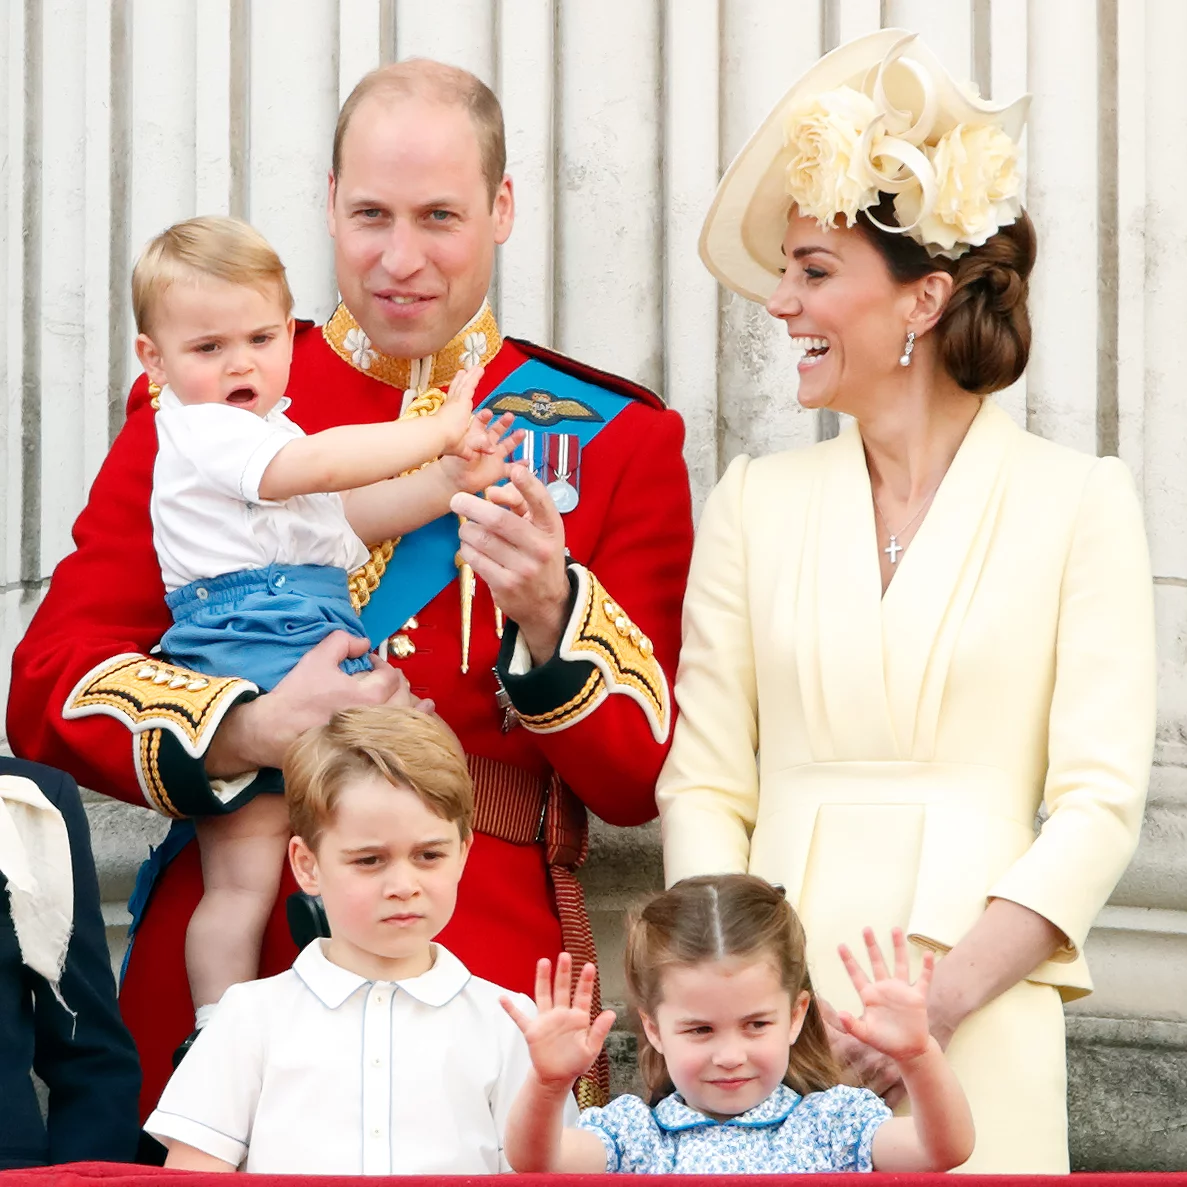 Фото детей кейт миддлтон и принца уильяма. Принц Умльям и Кейт Мидлтон. Принц Уильям и Кейт Миддлтон. Дети Кейт Миддлтон и принца Уильяма. Принц Вильям и Кейт дети.